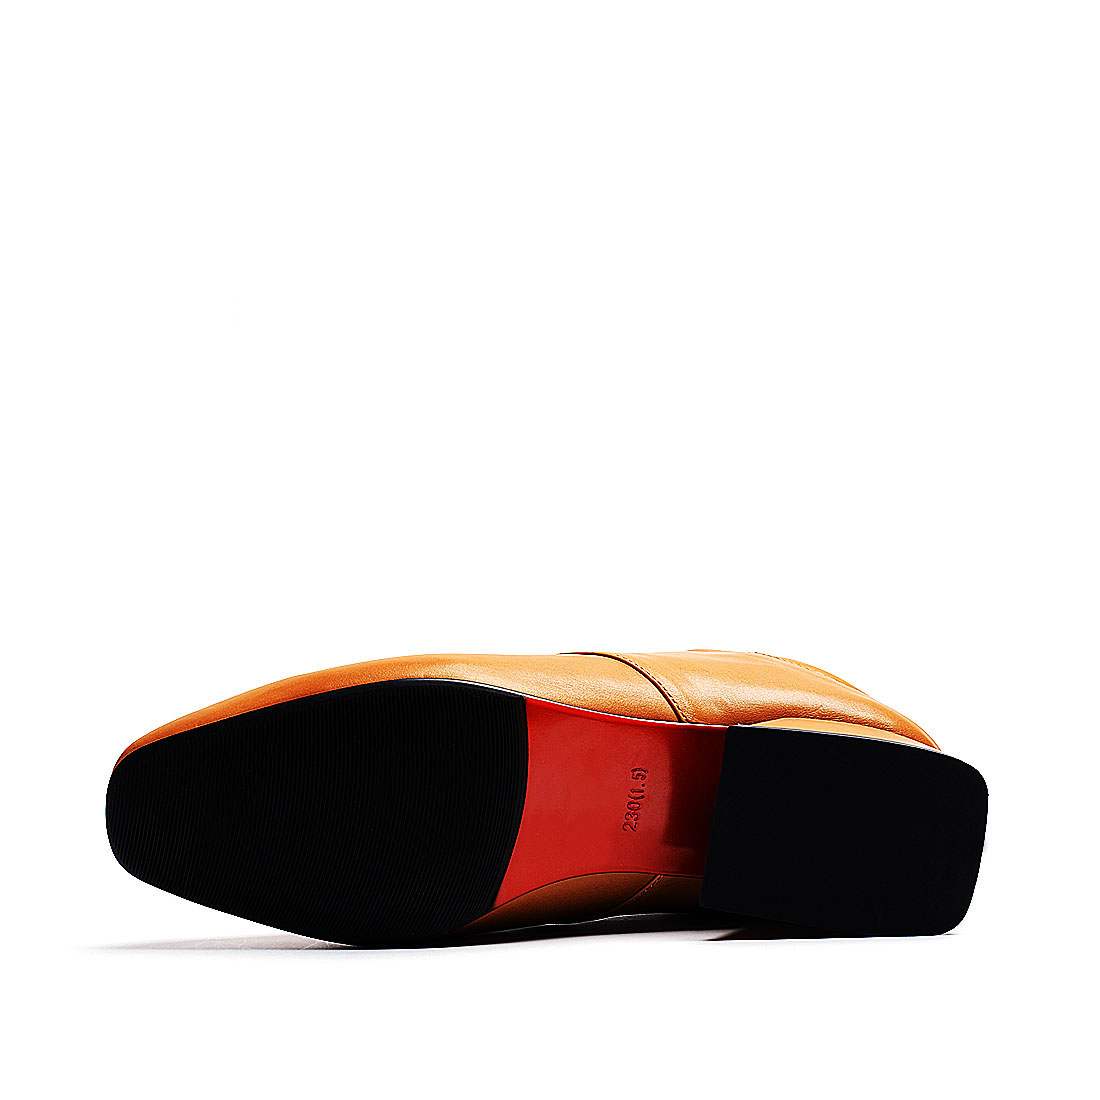 [RedLoafer]欧美风交叉绑带羊皮革单鞋(尺码标准)
编号：A3853D1A76